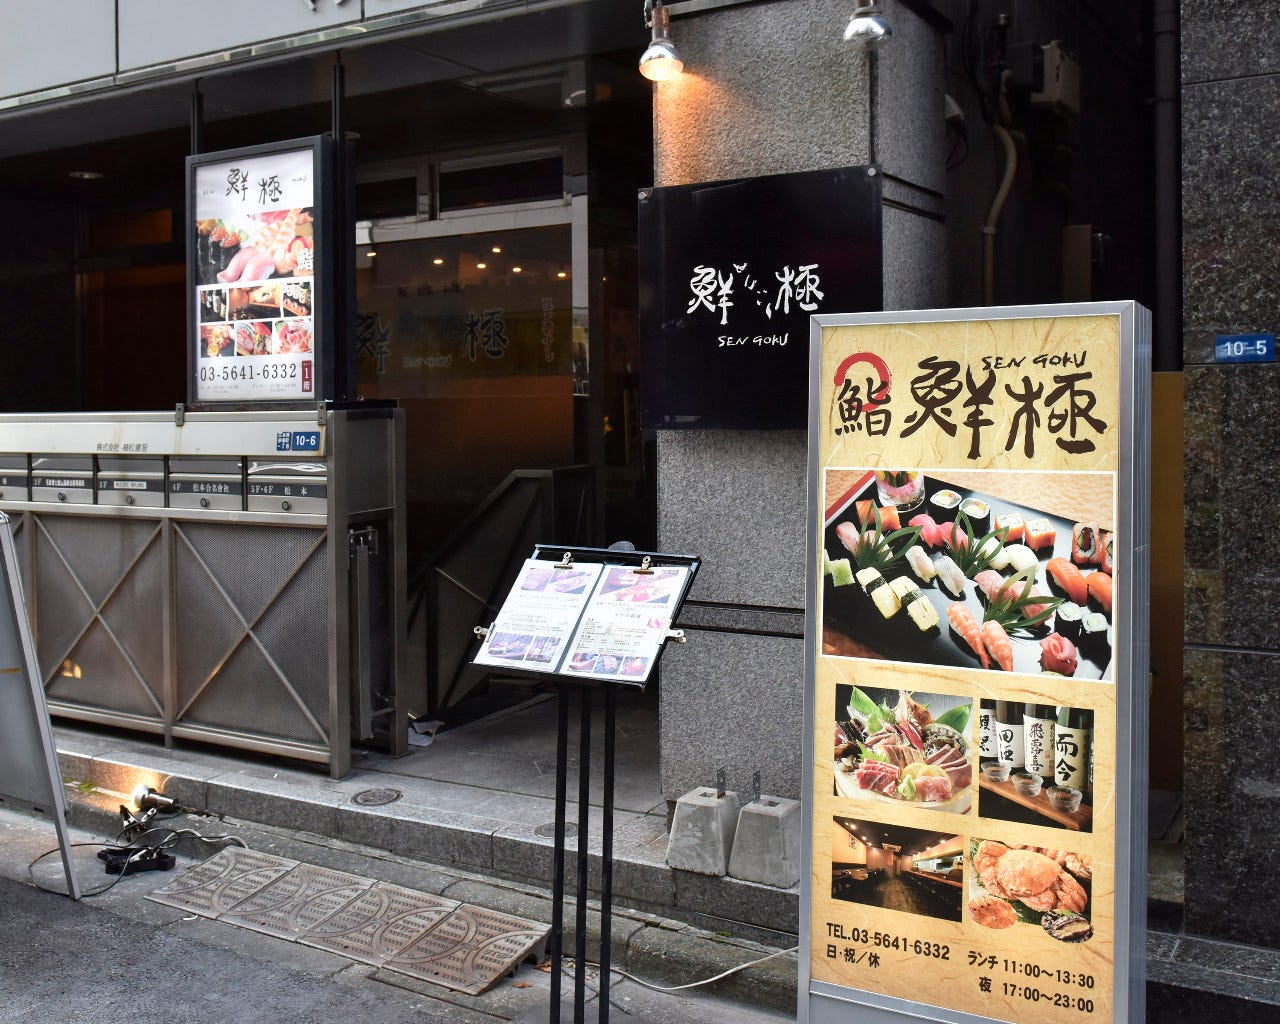 グレーを基調とした建物と寿司の写真の立て看板